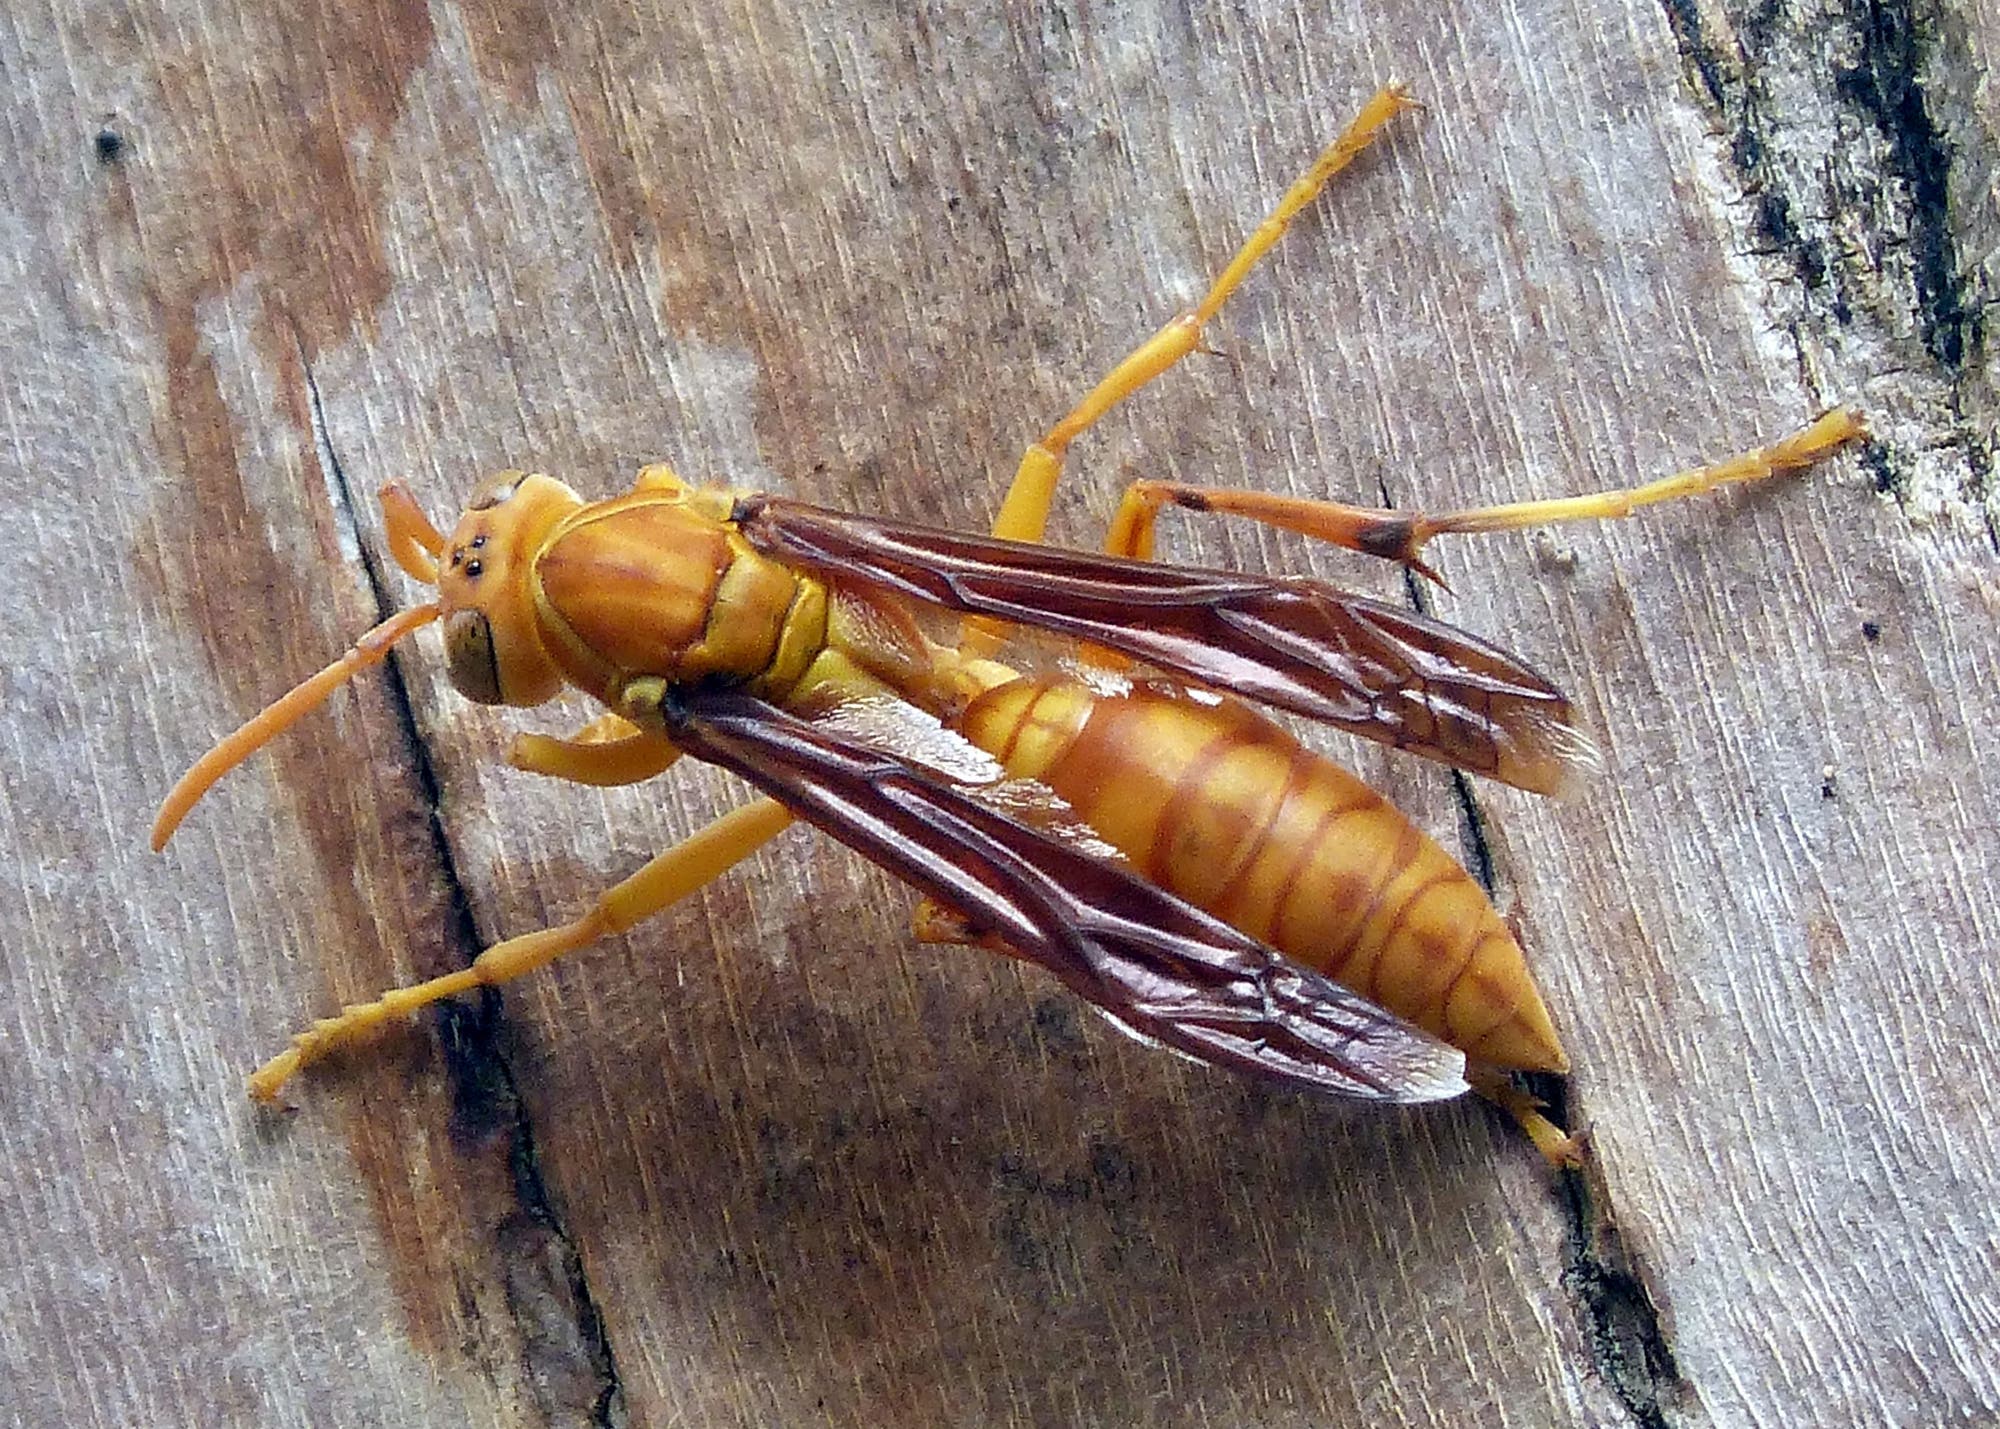 Polistes olivaceus ist eine gelb-orangefarbene, recht große Wespe. Hier auf einem Stück Rinde